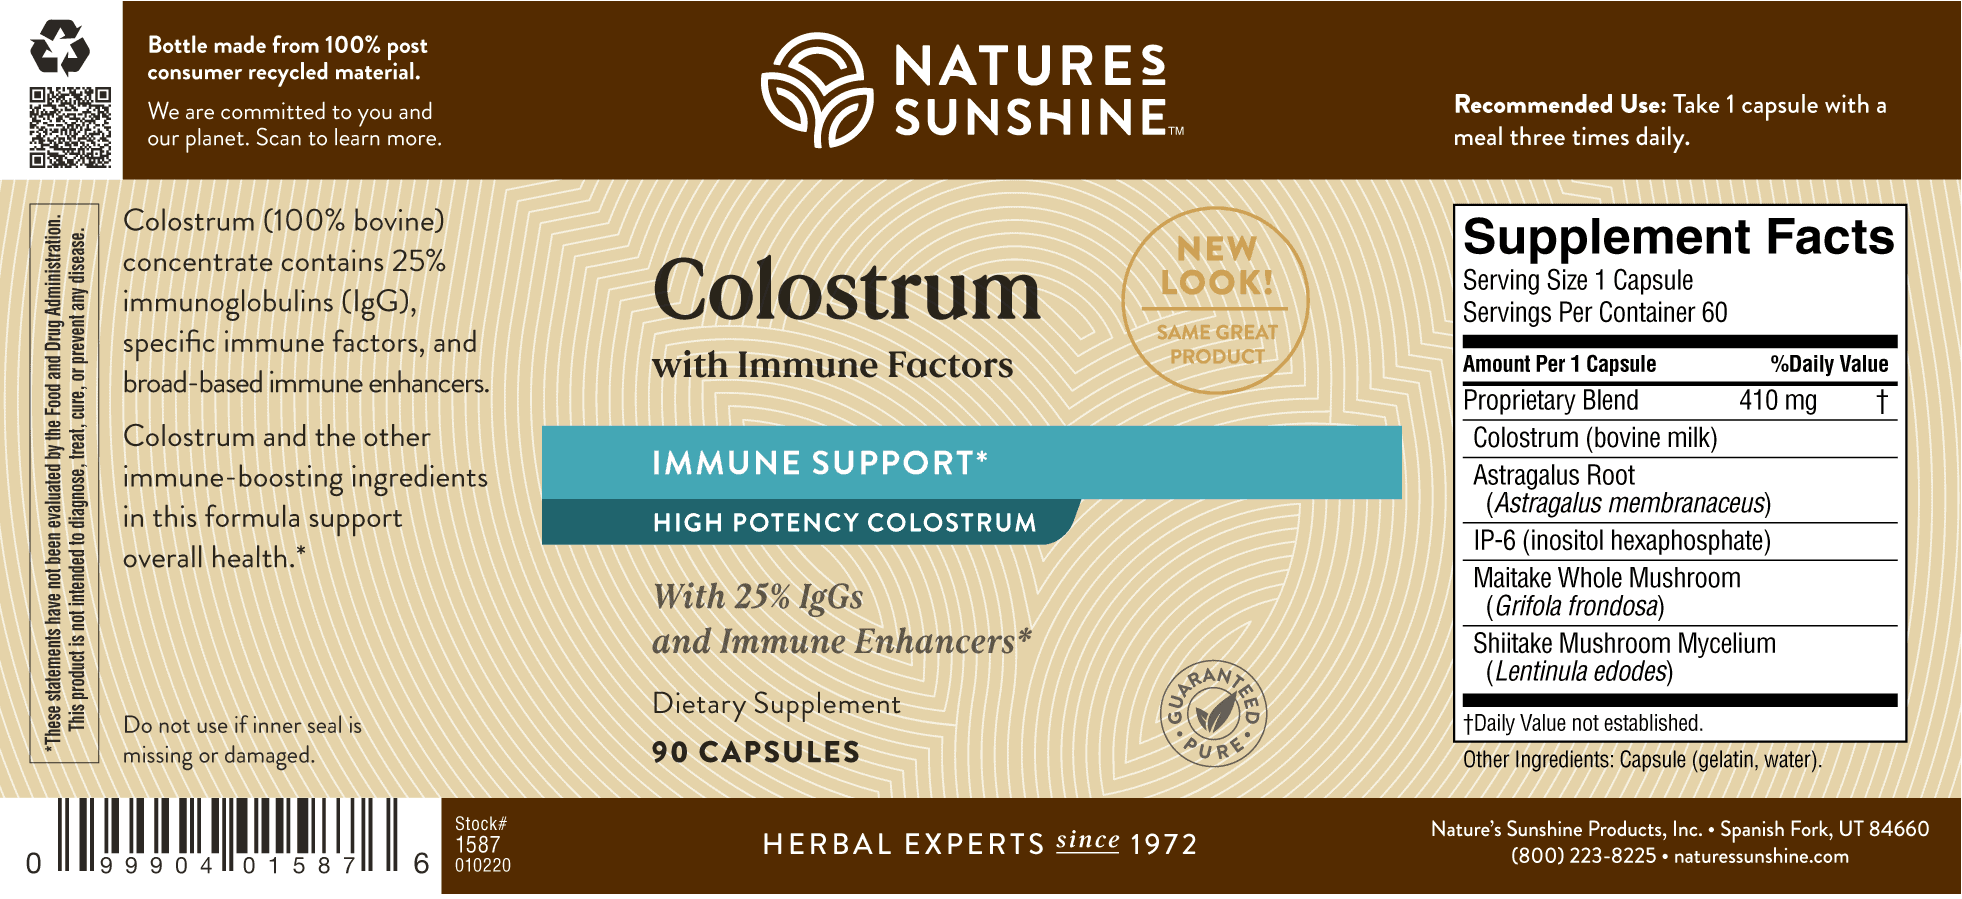 Nature's Sunshine Colostrum with Immune Factors label